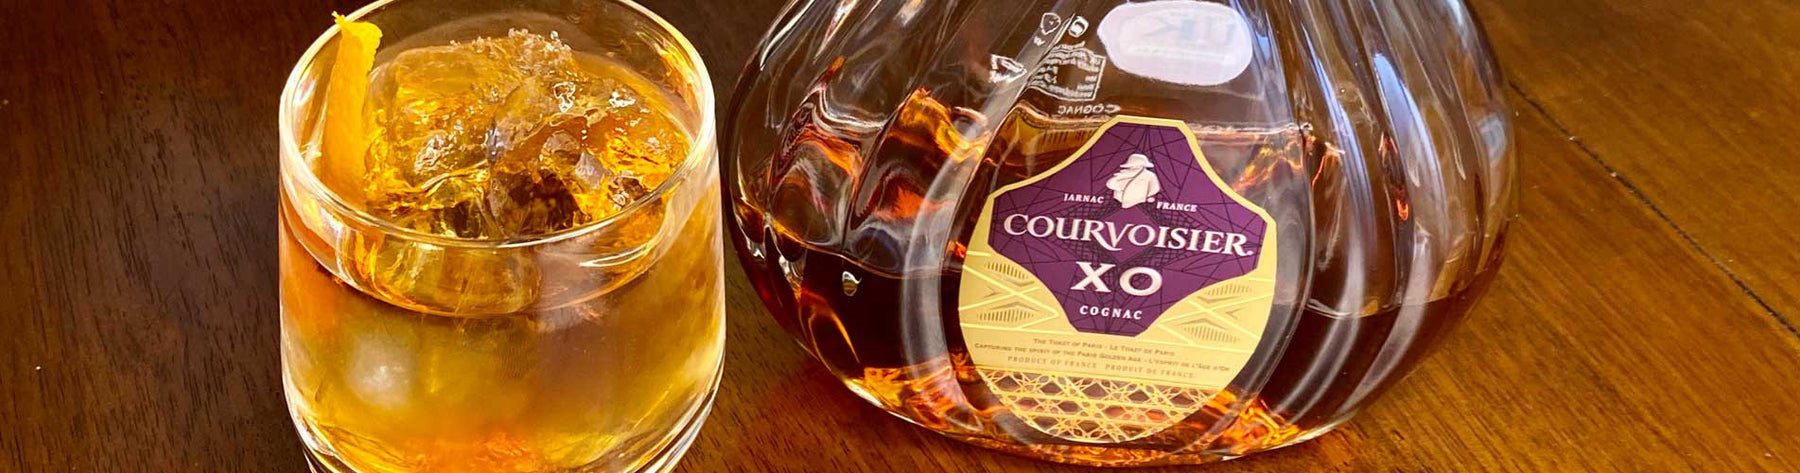 Courvoisier Cognac Vieux Caree Cocktail